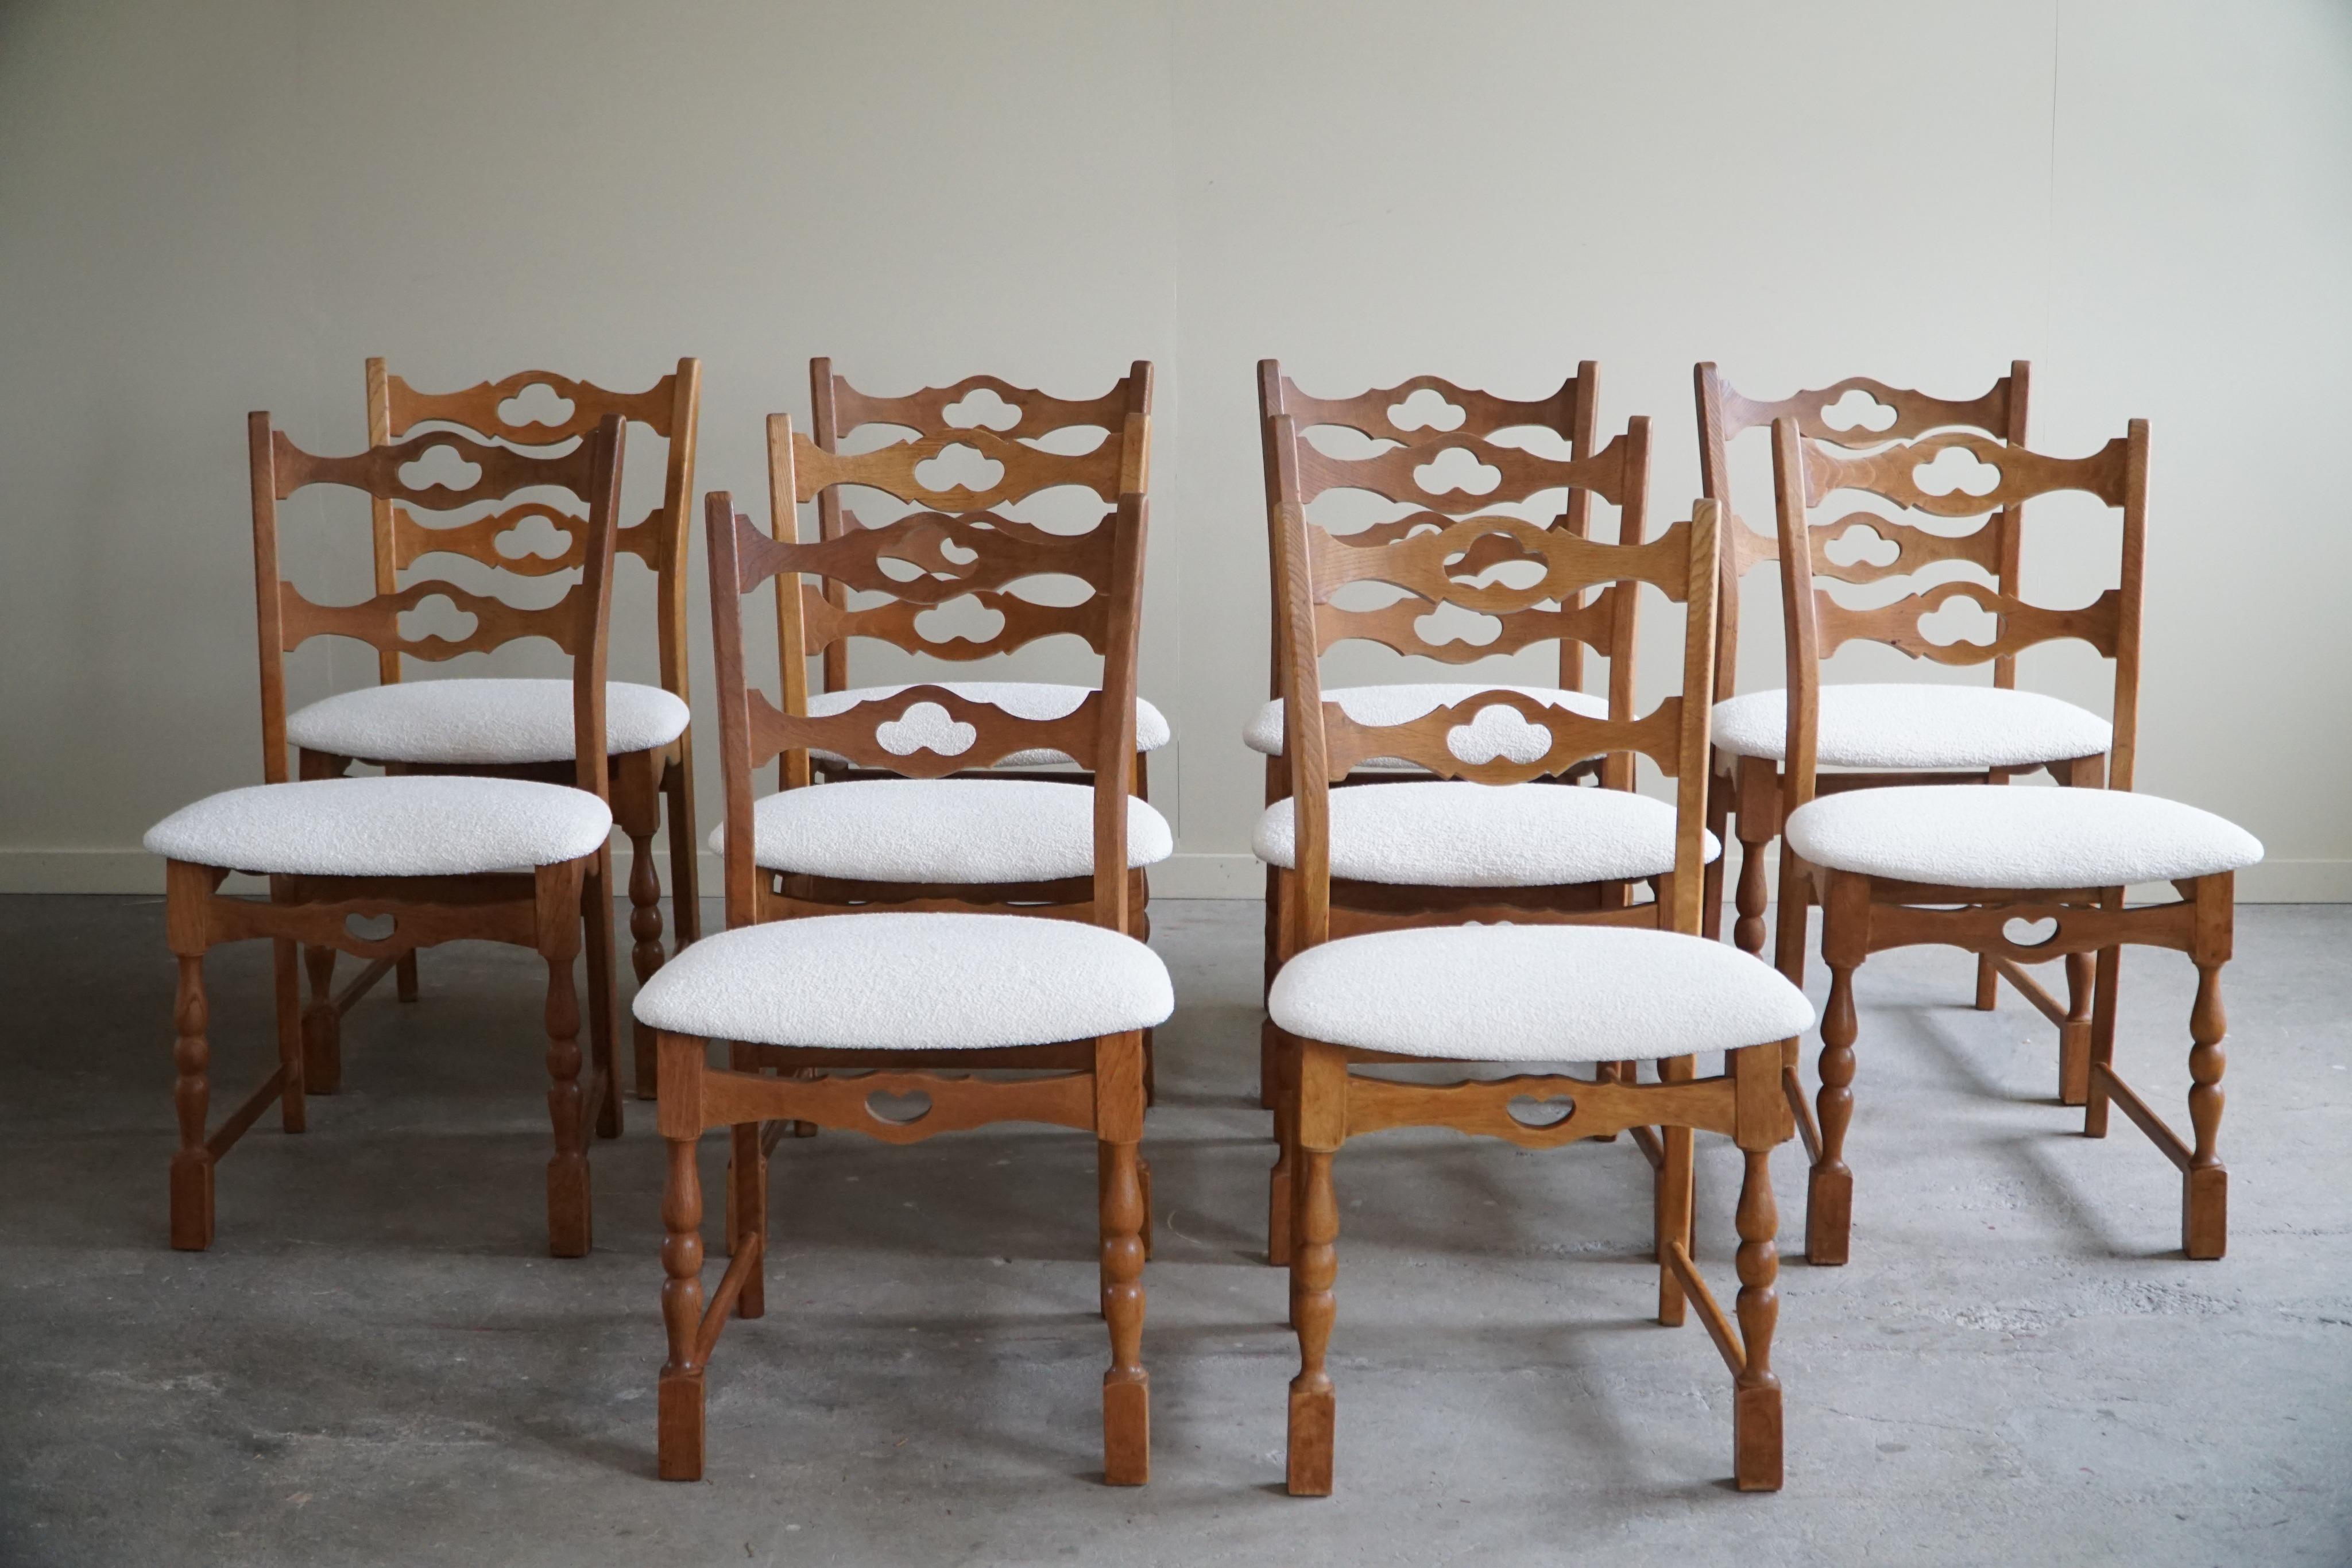 Un ensemble classique sculptural de 10 chaises de salle à manger en chêne, dont les sièges ont été retapissés en bouclé blanc. 
Attribué à Henning (Henry) Kjærnulf pour E.G. Møbler - ca 1960.

L'impression générale de ces chaises du milieu du siècle